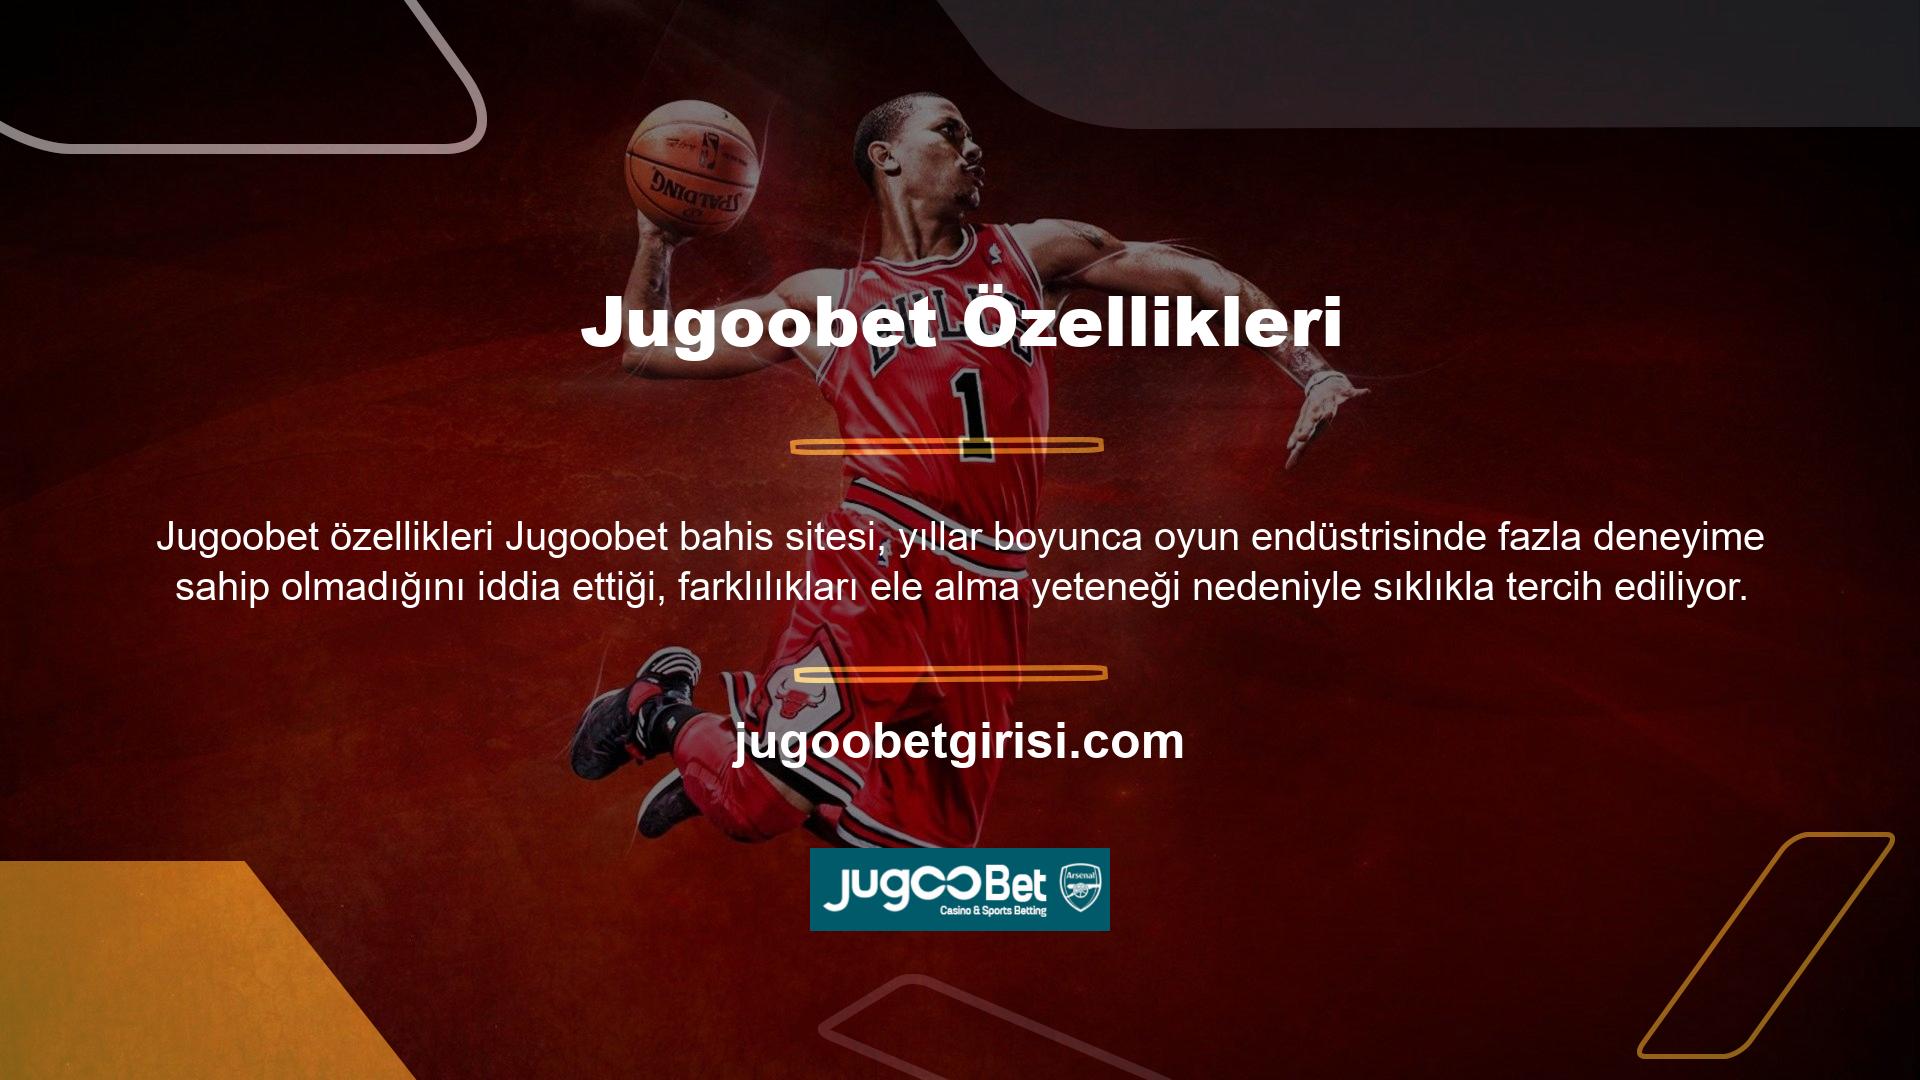 Jugoobet web sitesinin özellikleri nelerdir? Services